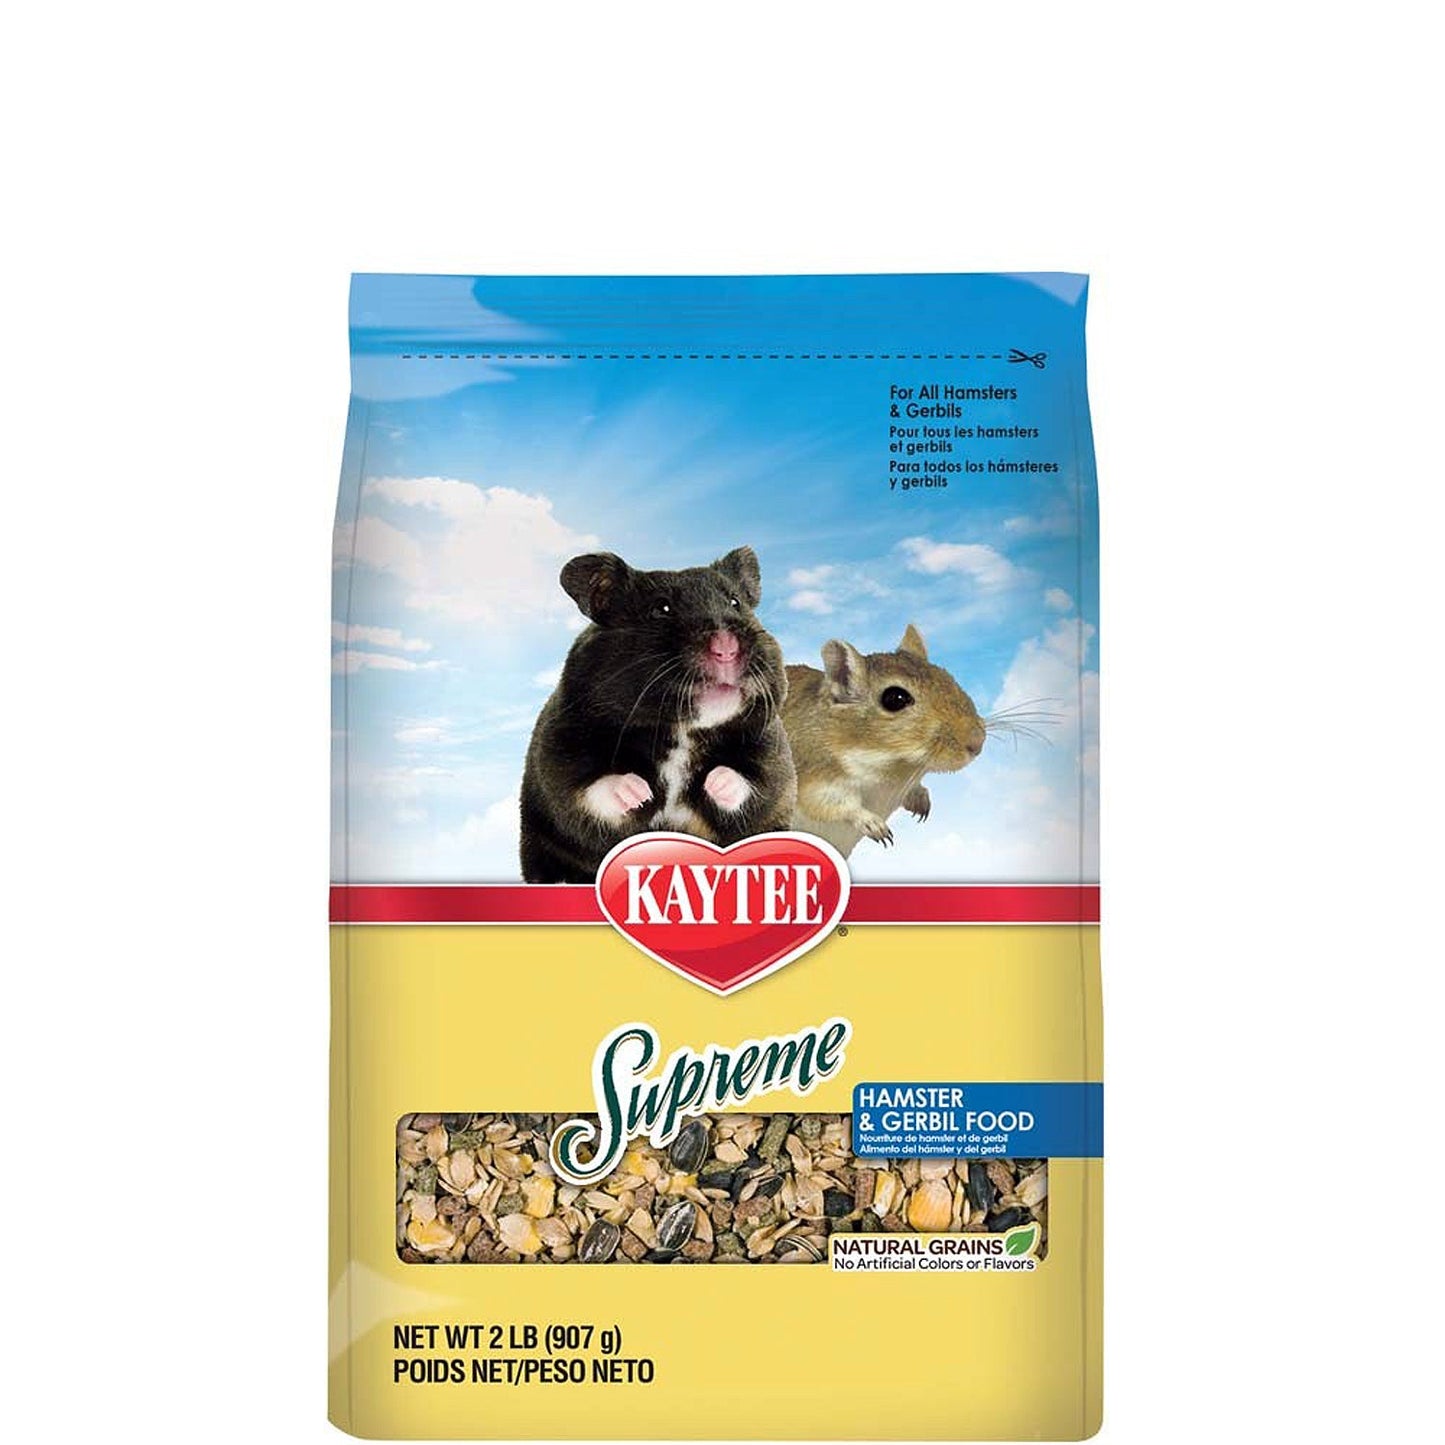 Kaytee Supreme Hamster and Gerbil Food 1ea/2 lb